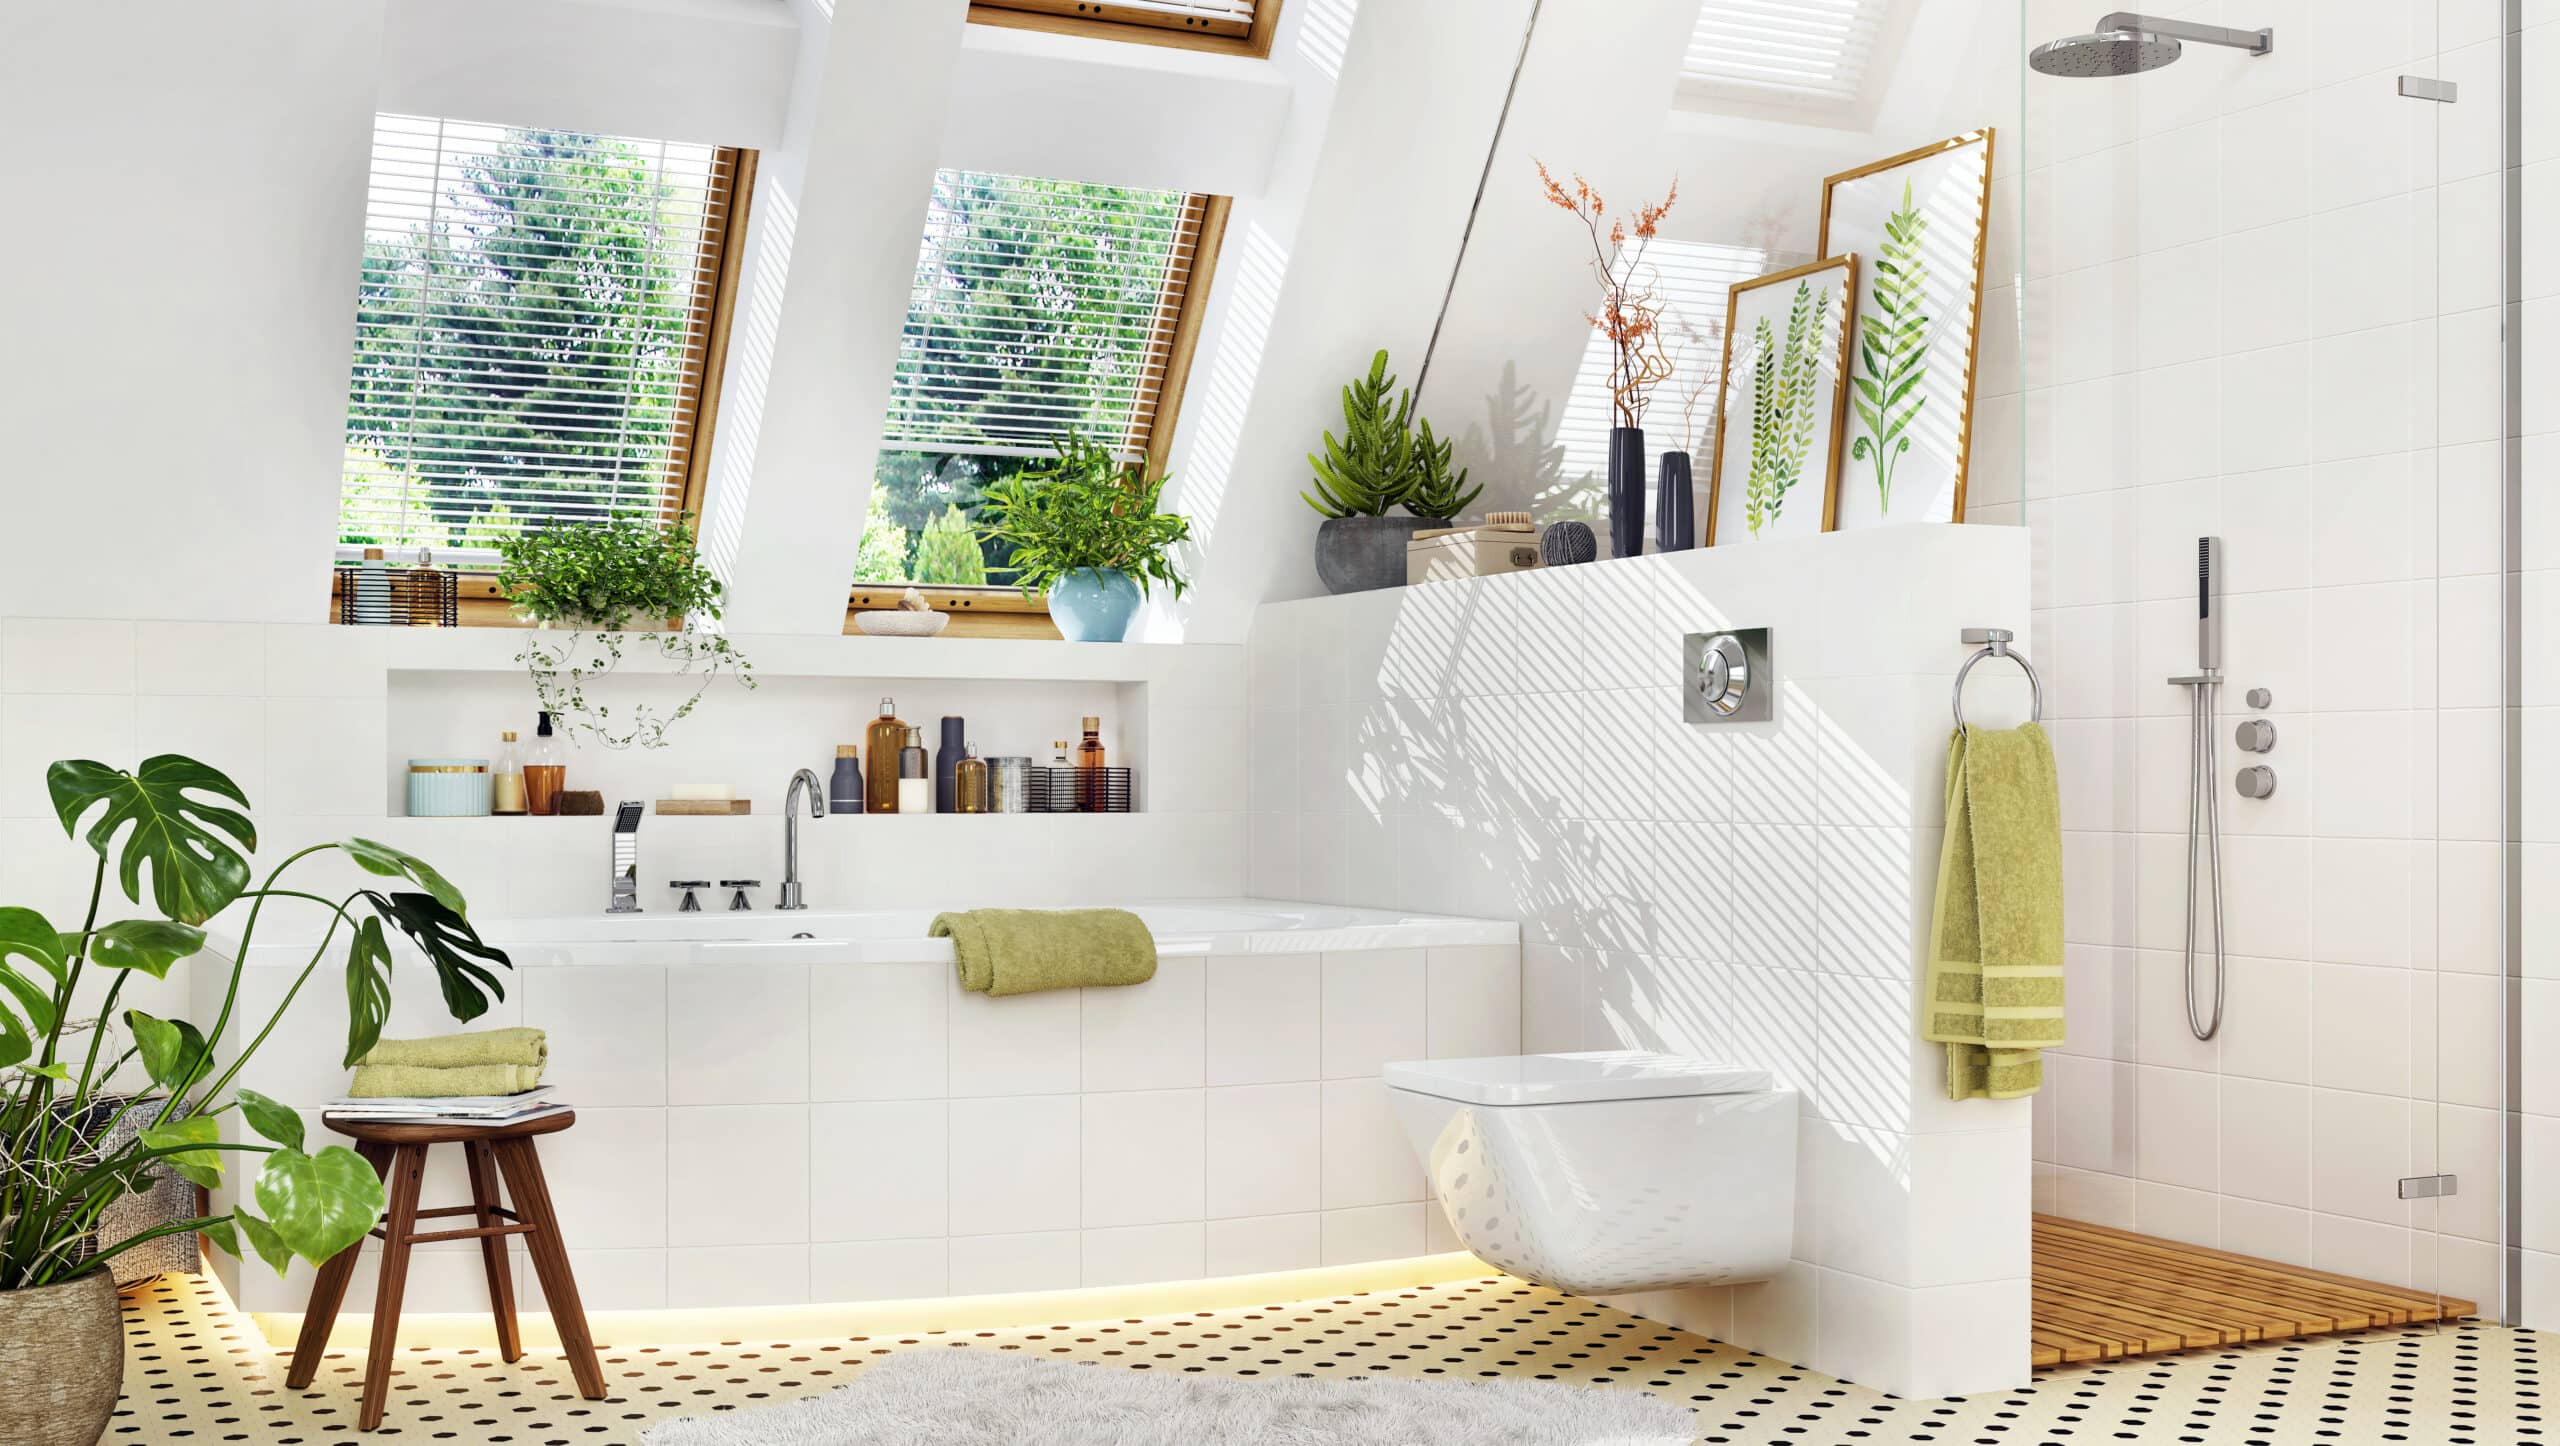 Luxury bathroom with bathtub and shower